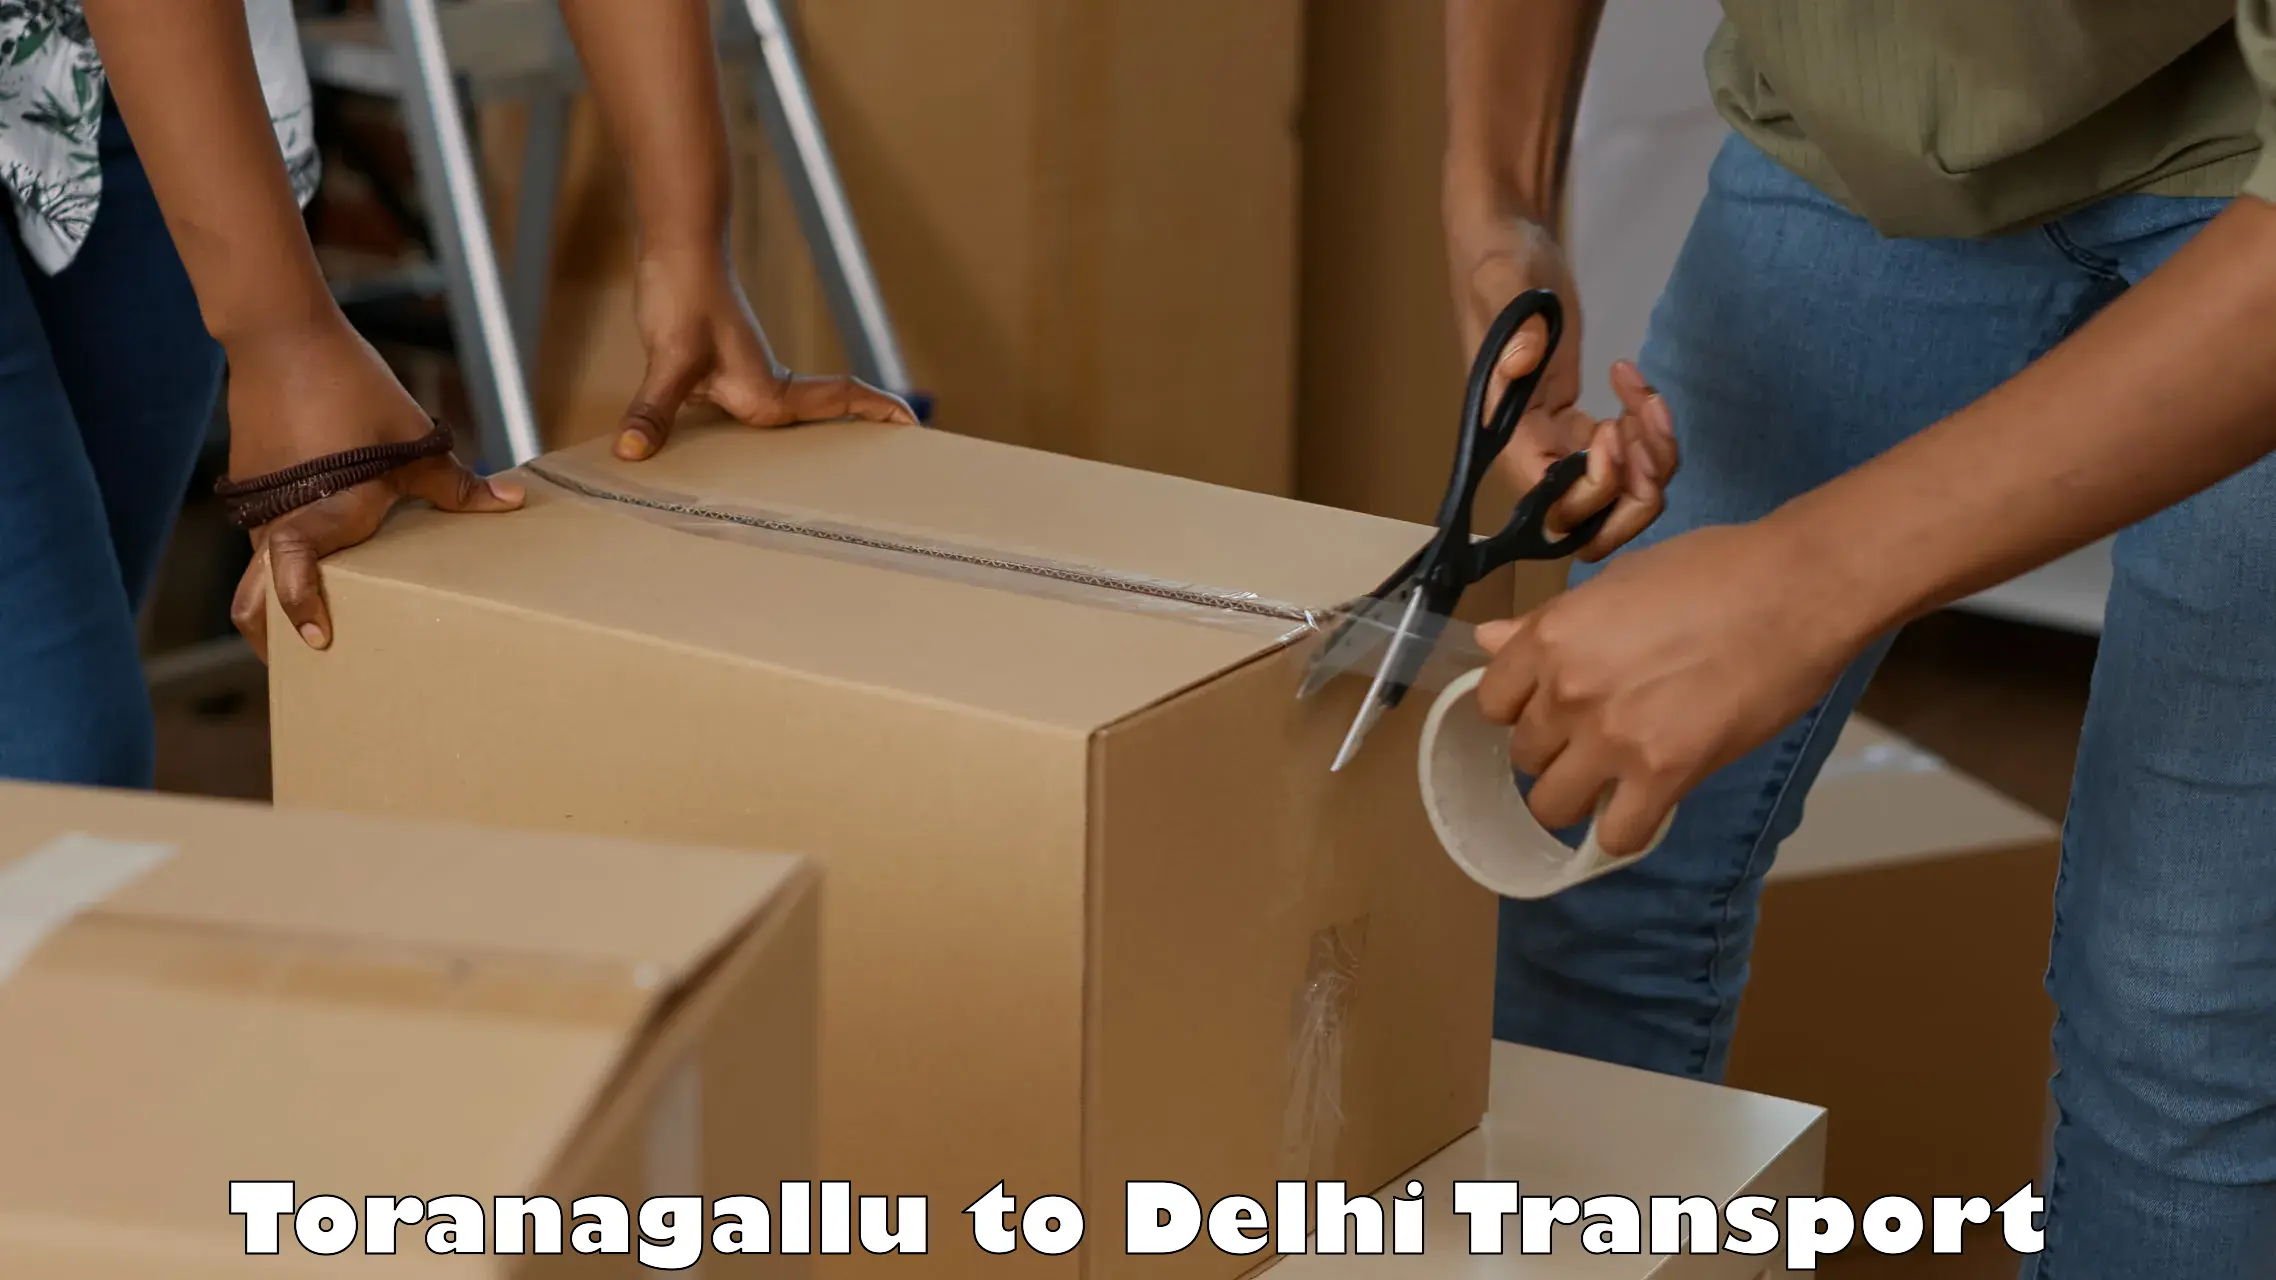 Road transport online services Toranagallu to East Delhi